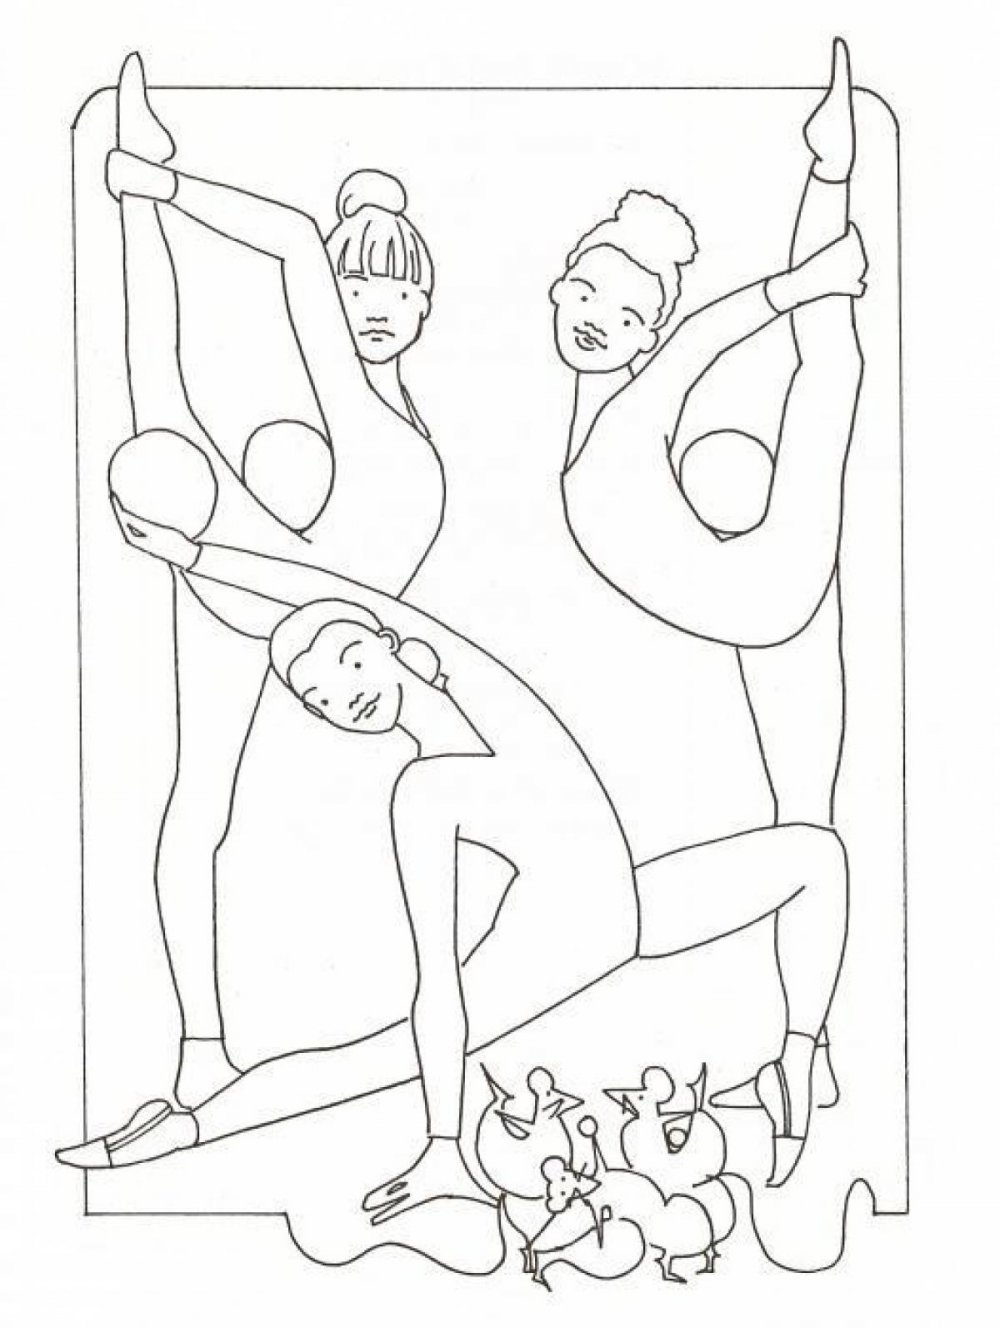 Акробатика раскраска для детей